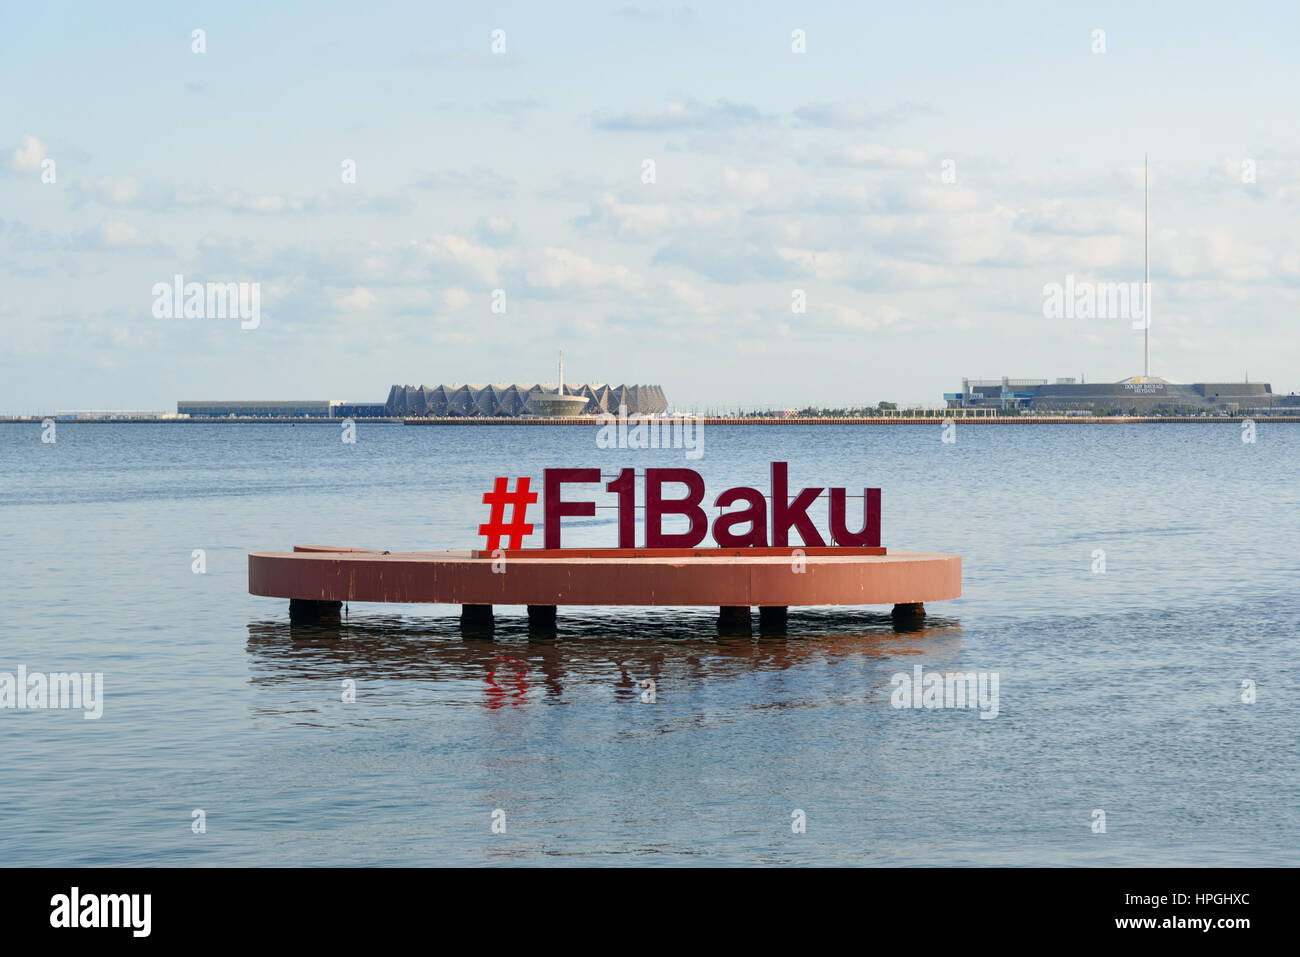 Baku, Aserbaidschan - 10. September 2016: Singen F1 Baku im Kaspischen See an der Strandpromenade. Die 2016 Grand Prix von Europa war die Auftaktveranstaltung am Stockfoto